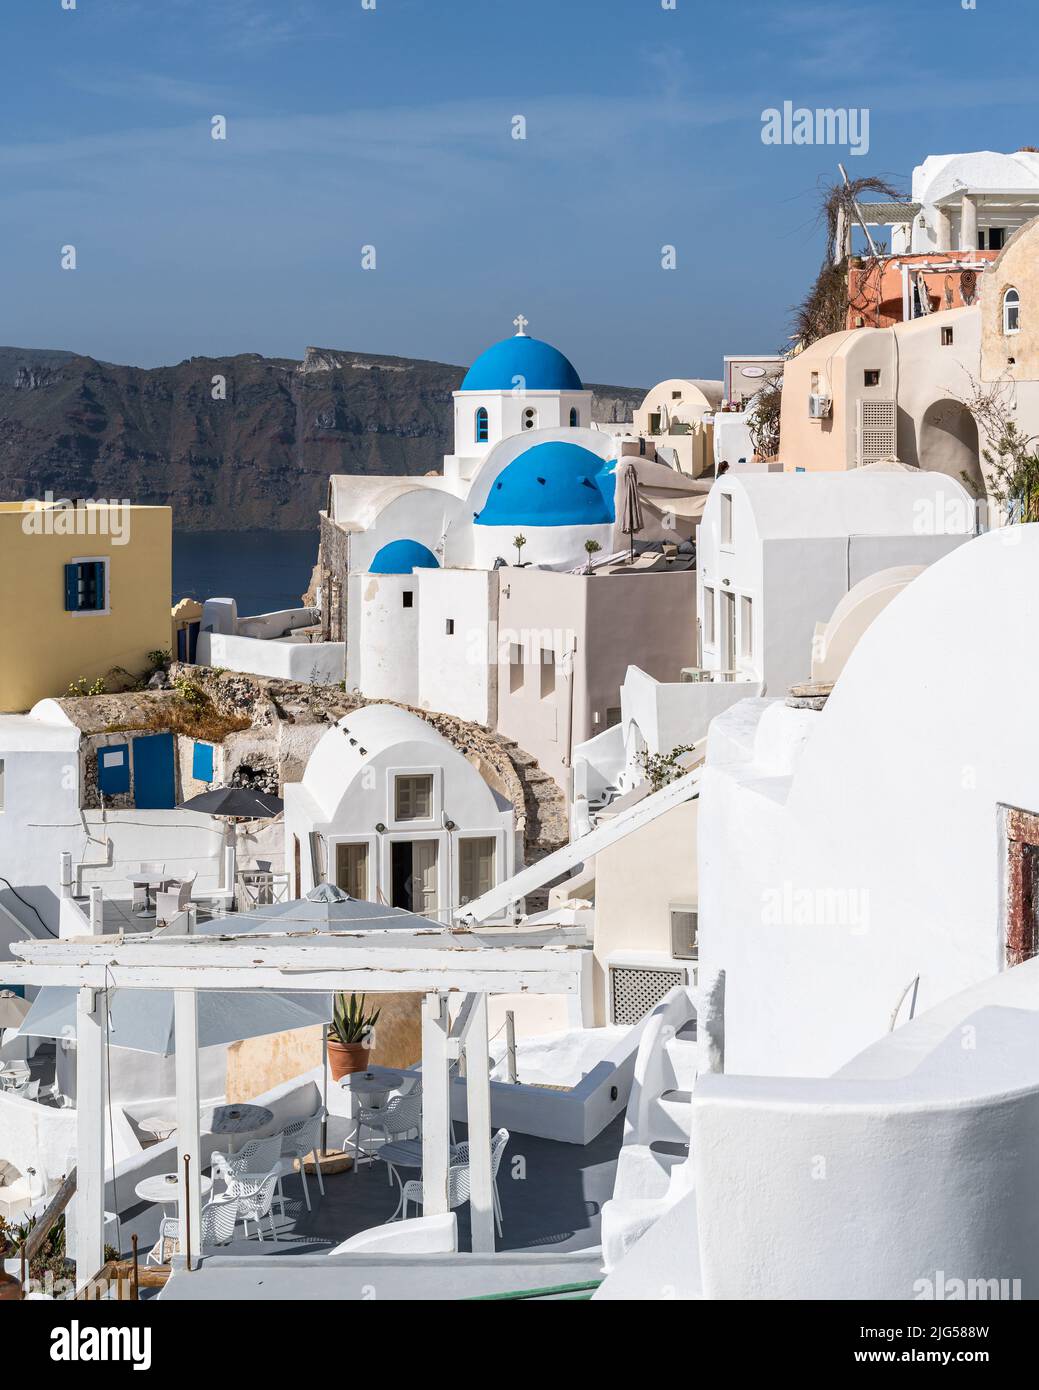 Vista del villaggio di Oia a Santorini con tradizionali case bianche e cupole blu chiese, Grecia Foto Stock